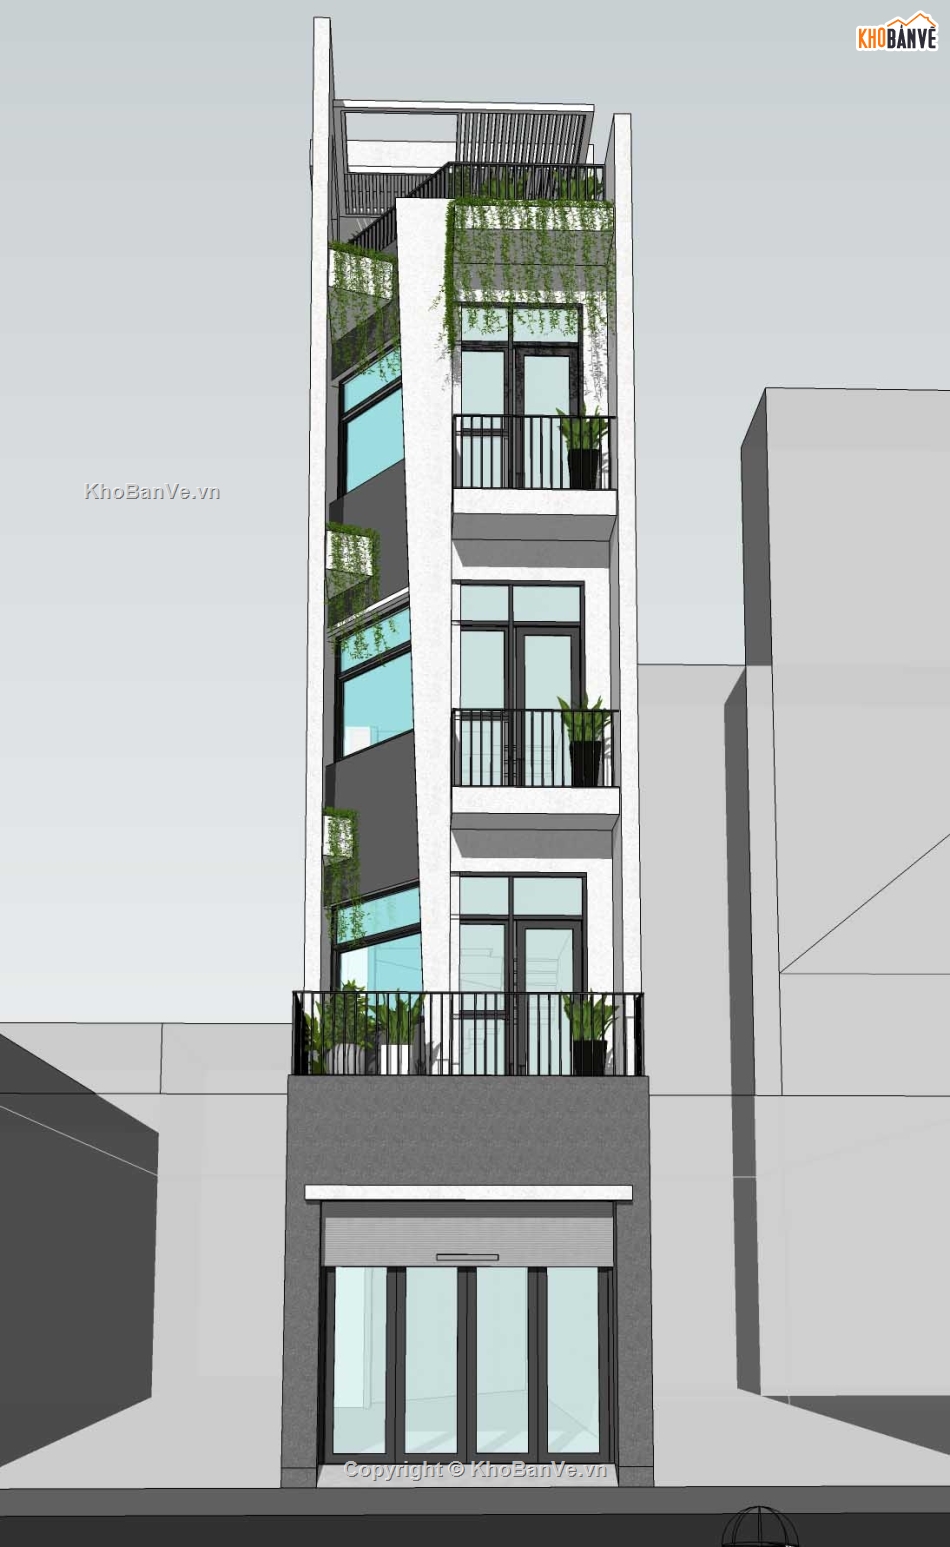 Nhà phố 5 tầng,Nhà phố 3.6x18,Nhà phố hiện đại,Phương án nhà phố,File sketchup nhà phố hiện đại